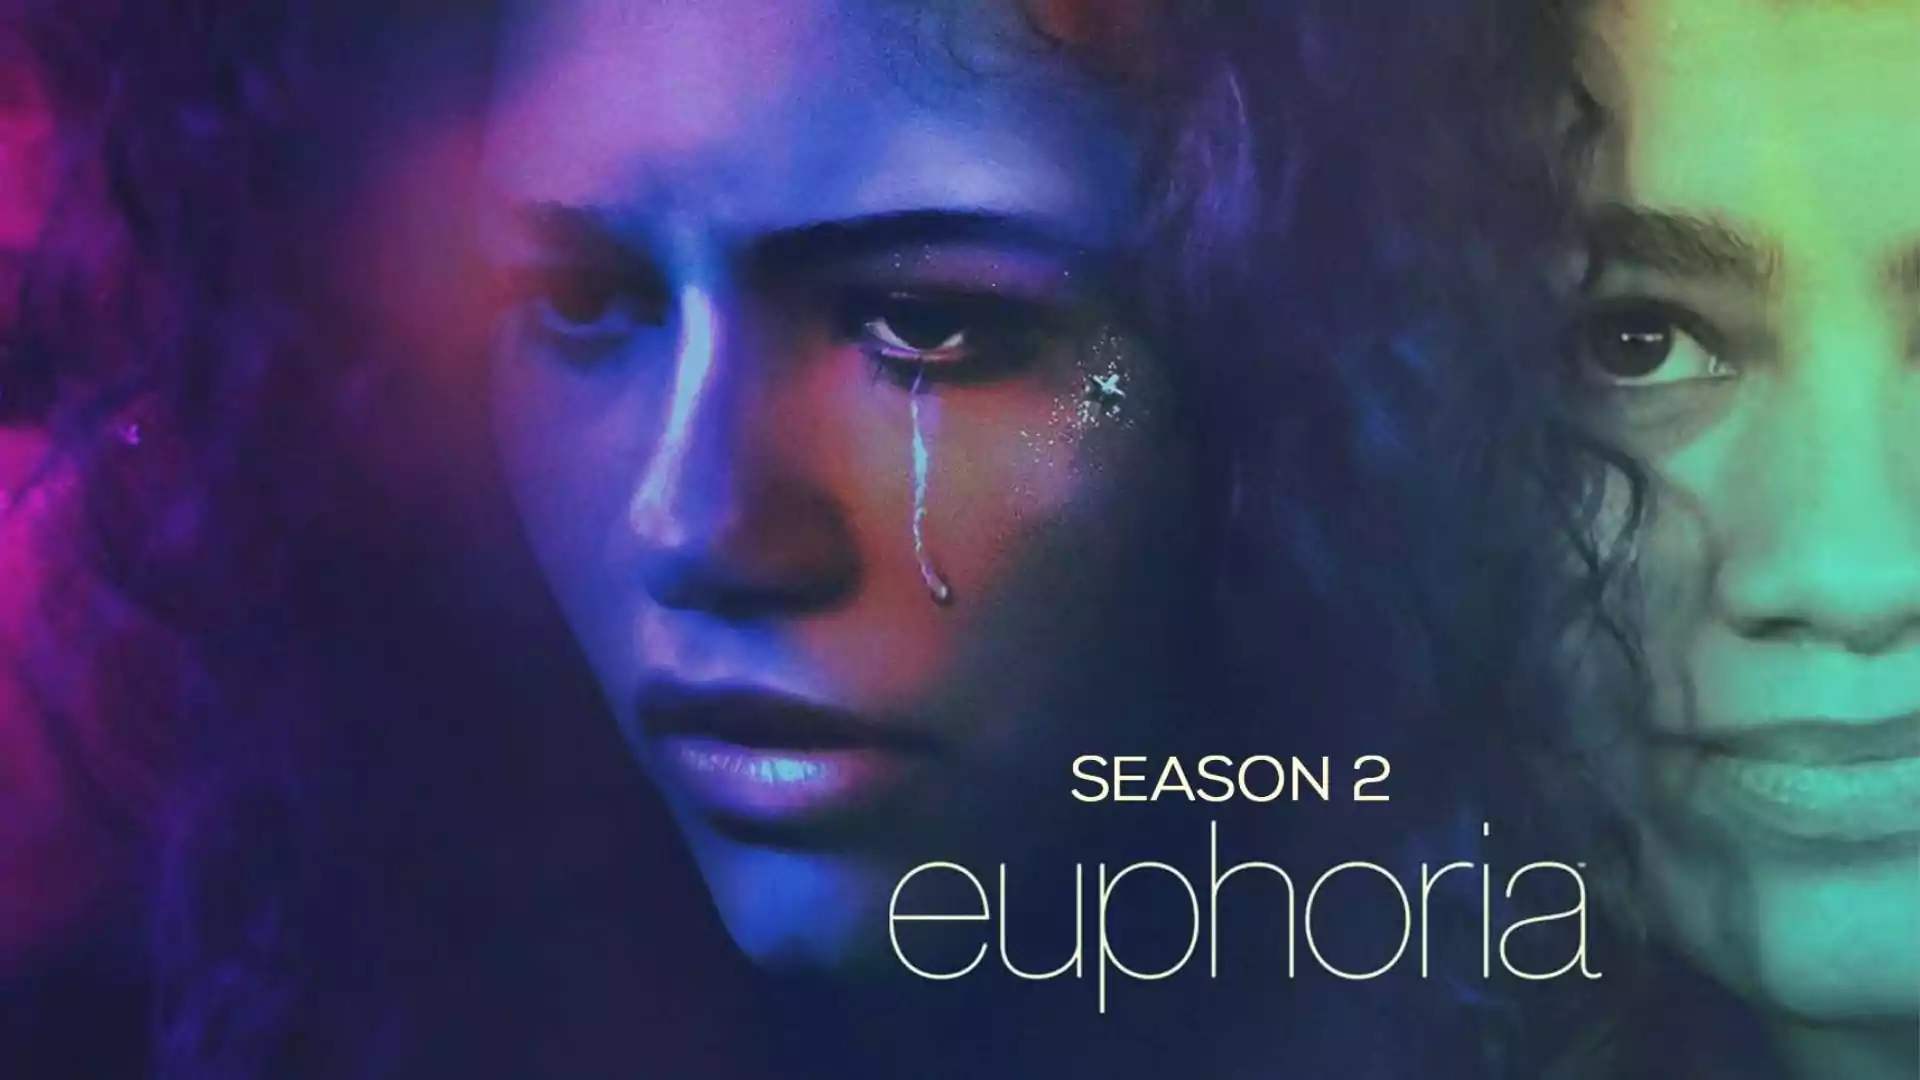 Euphoria Star Cast, Plot, and Review 2022